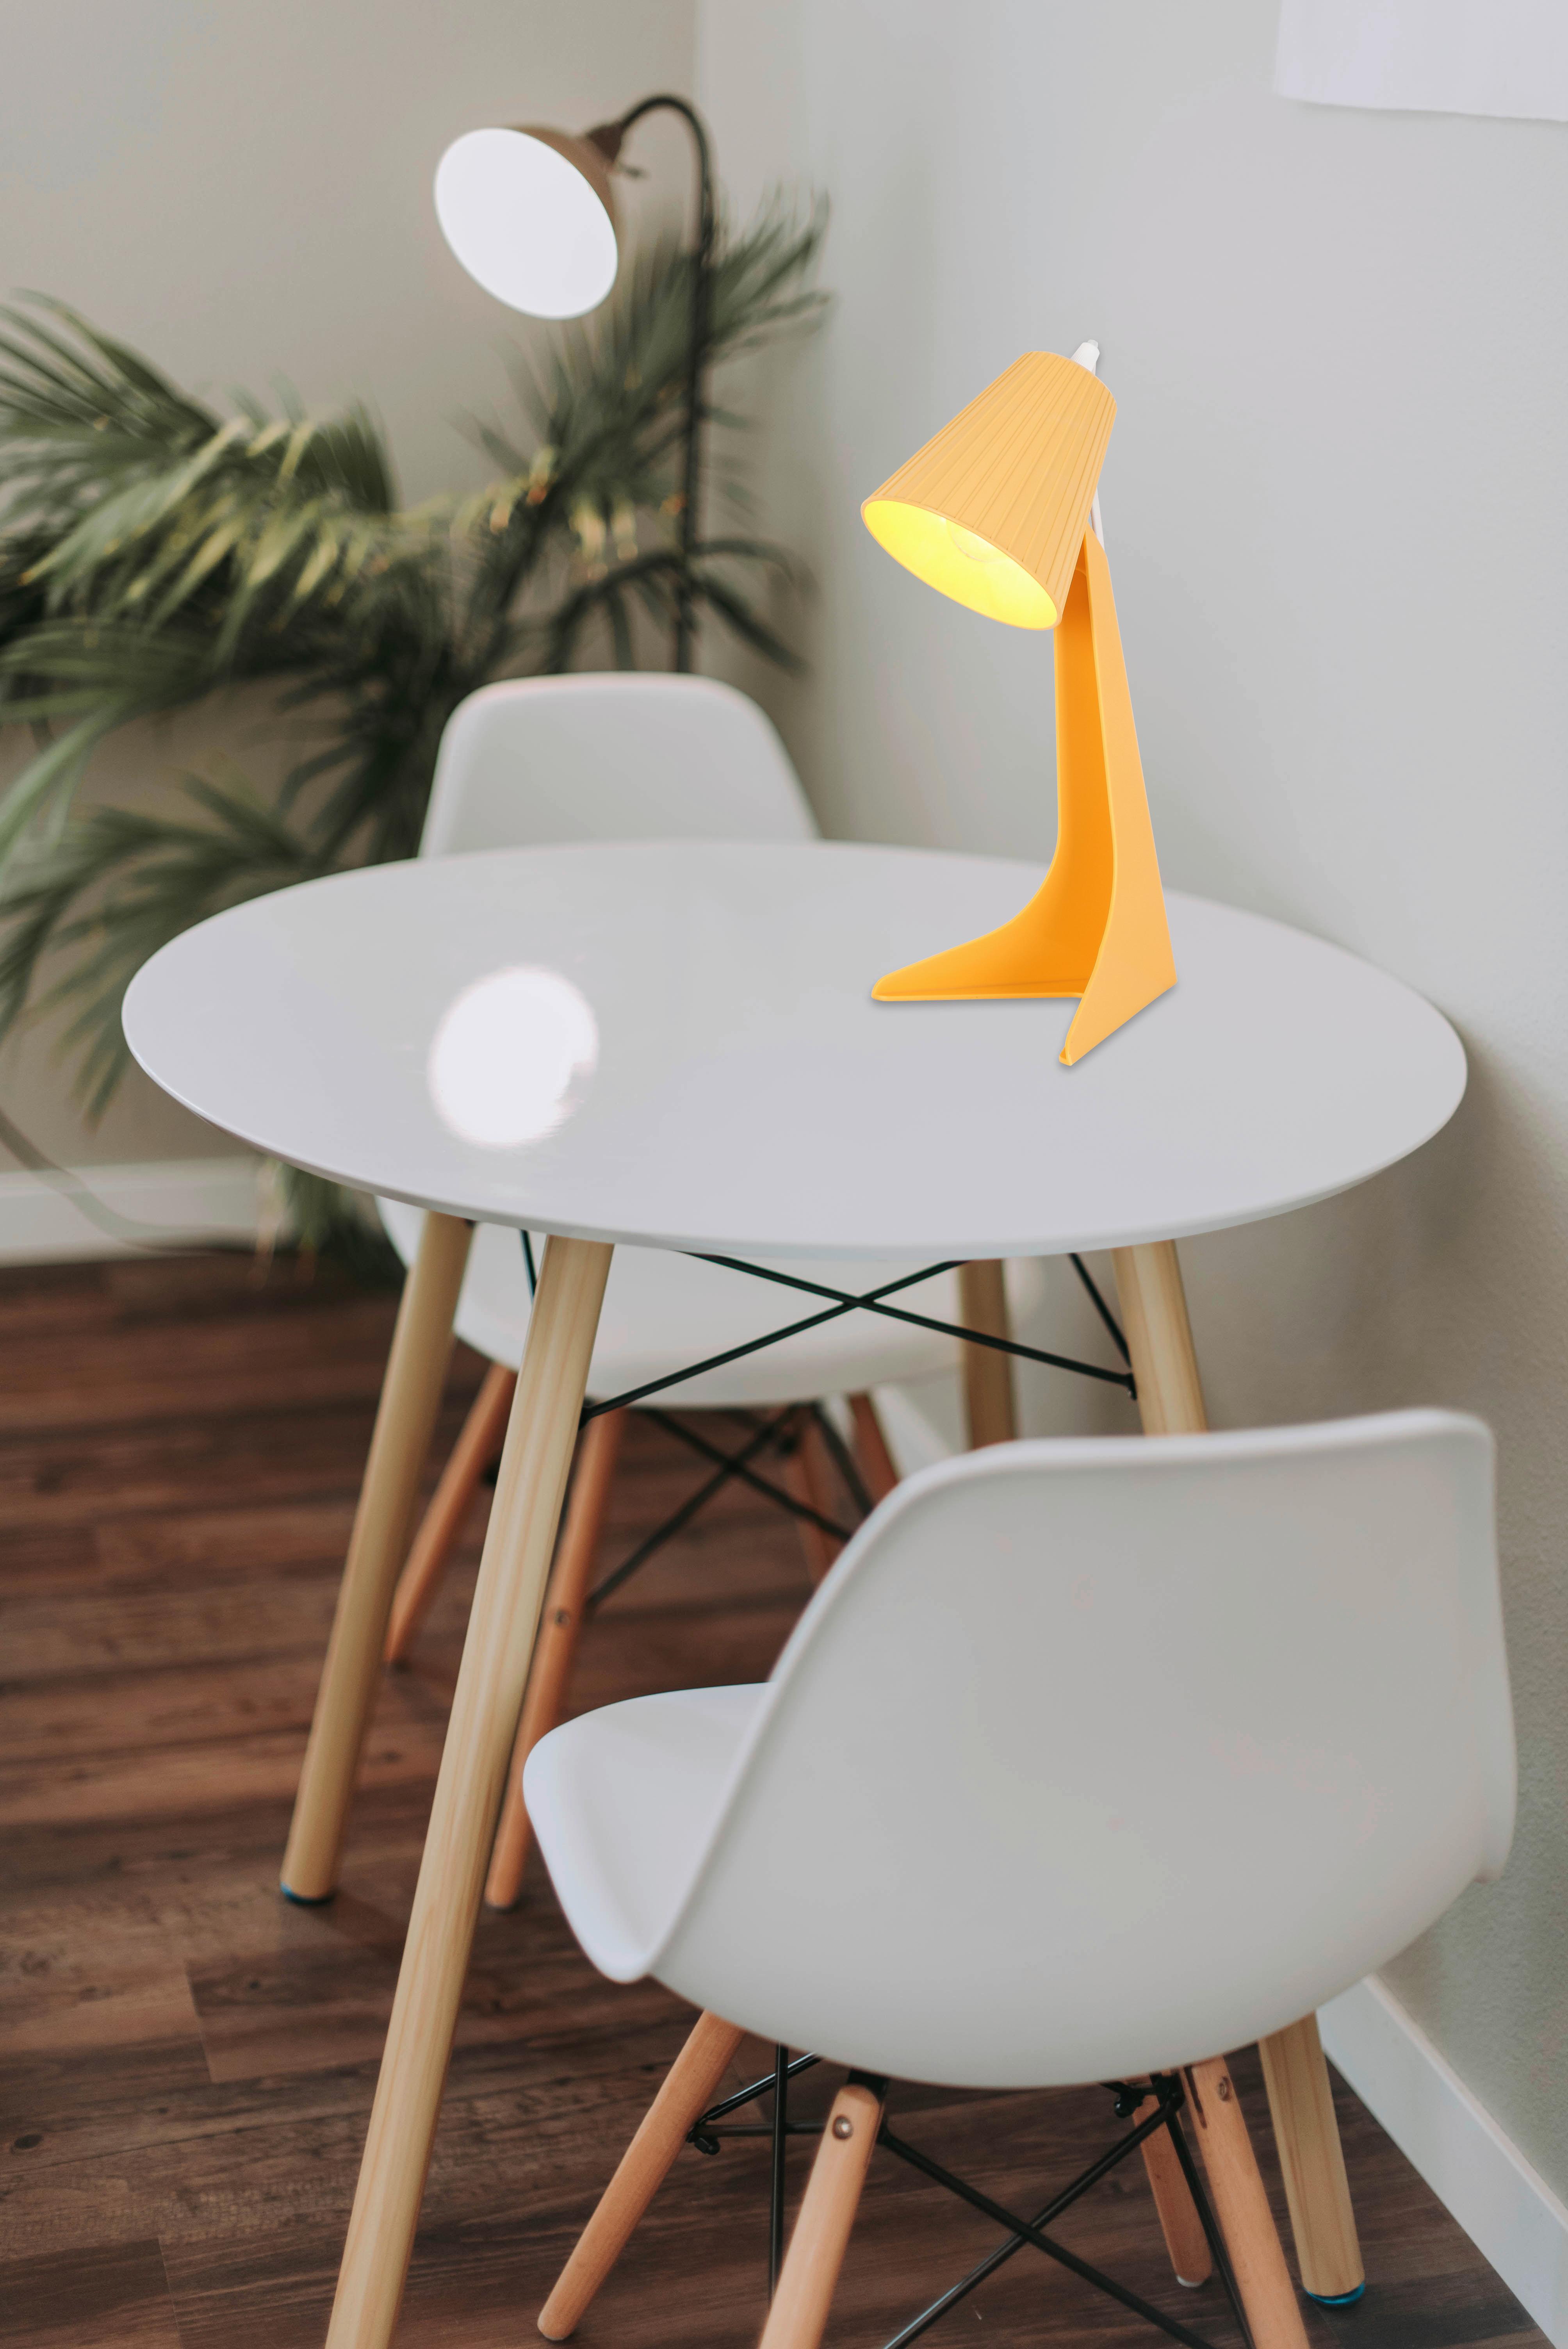 Stolná Lampa Bunti - oranžová, Romantický / Vidiecky, plast (15,6/34,3/18,9cm) - Modern Living